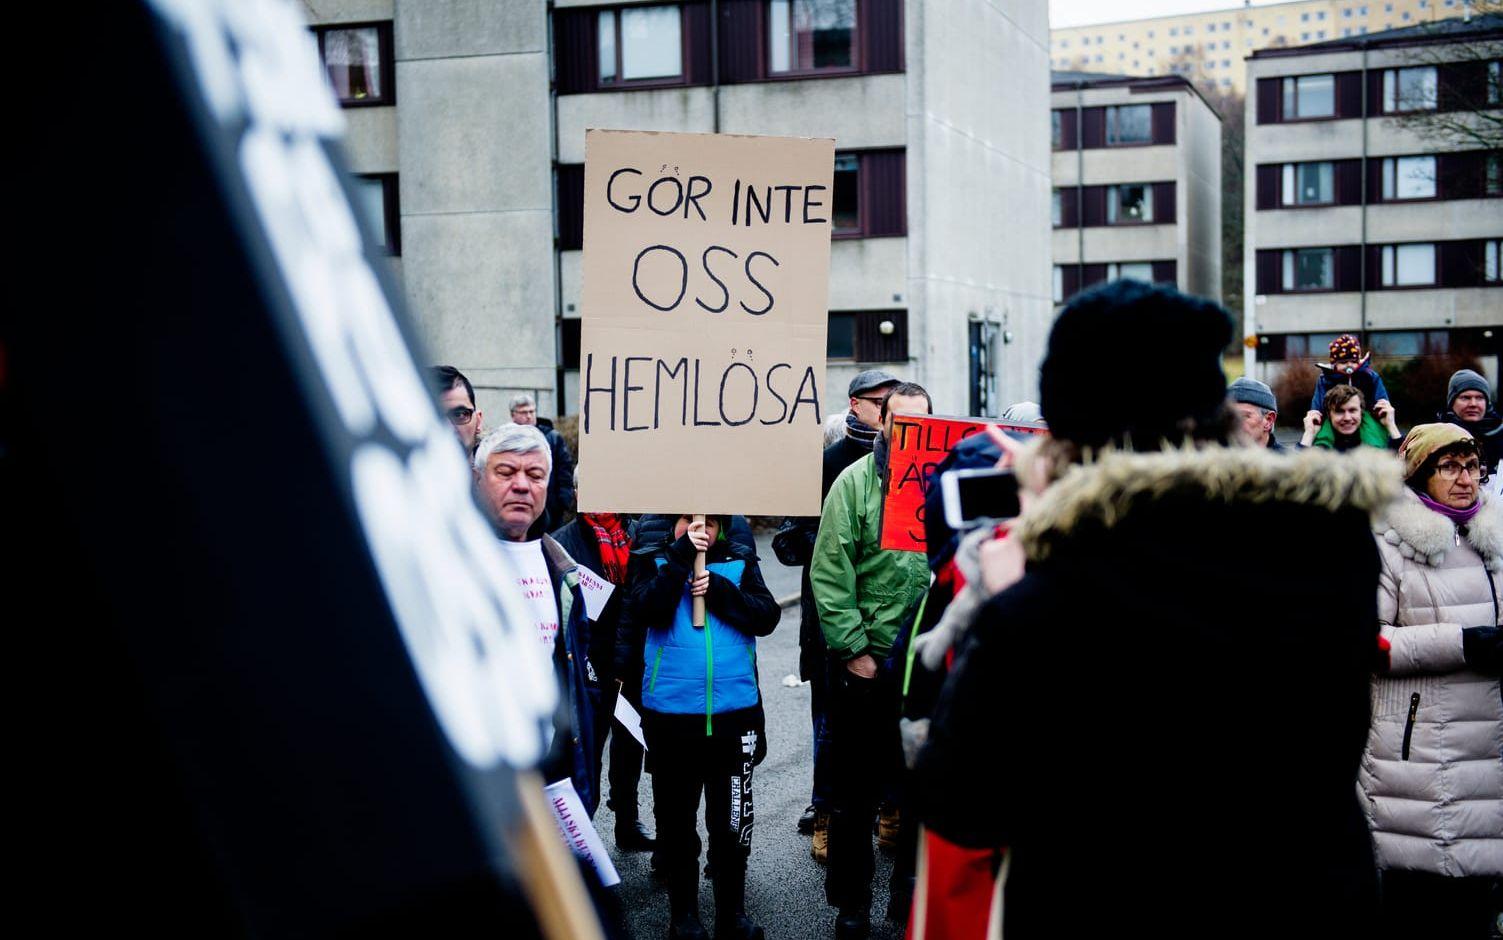 Ett 70-tal personer demonstrerade på Långströmsgatan under lördagen. Bild: Anna Svanberg